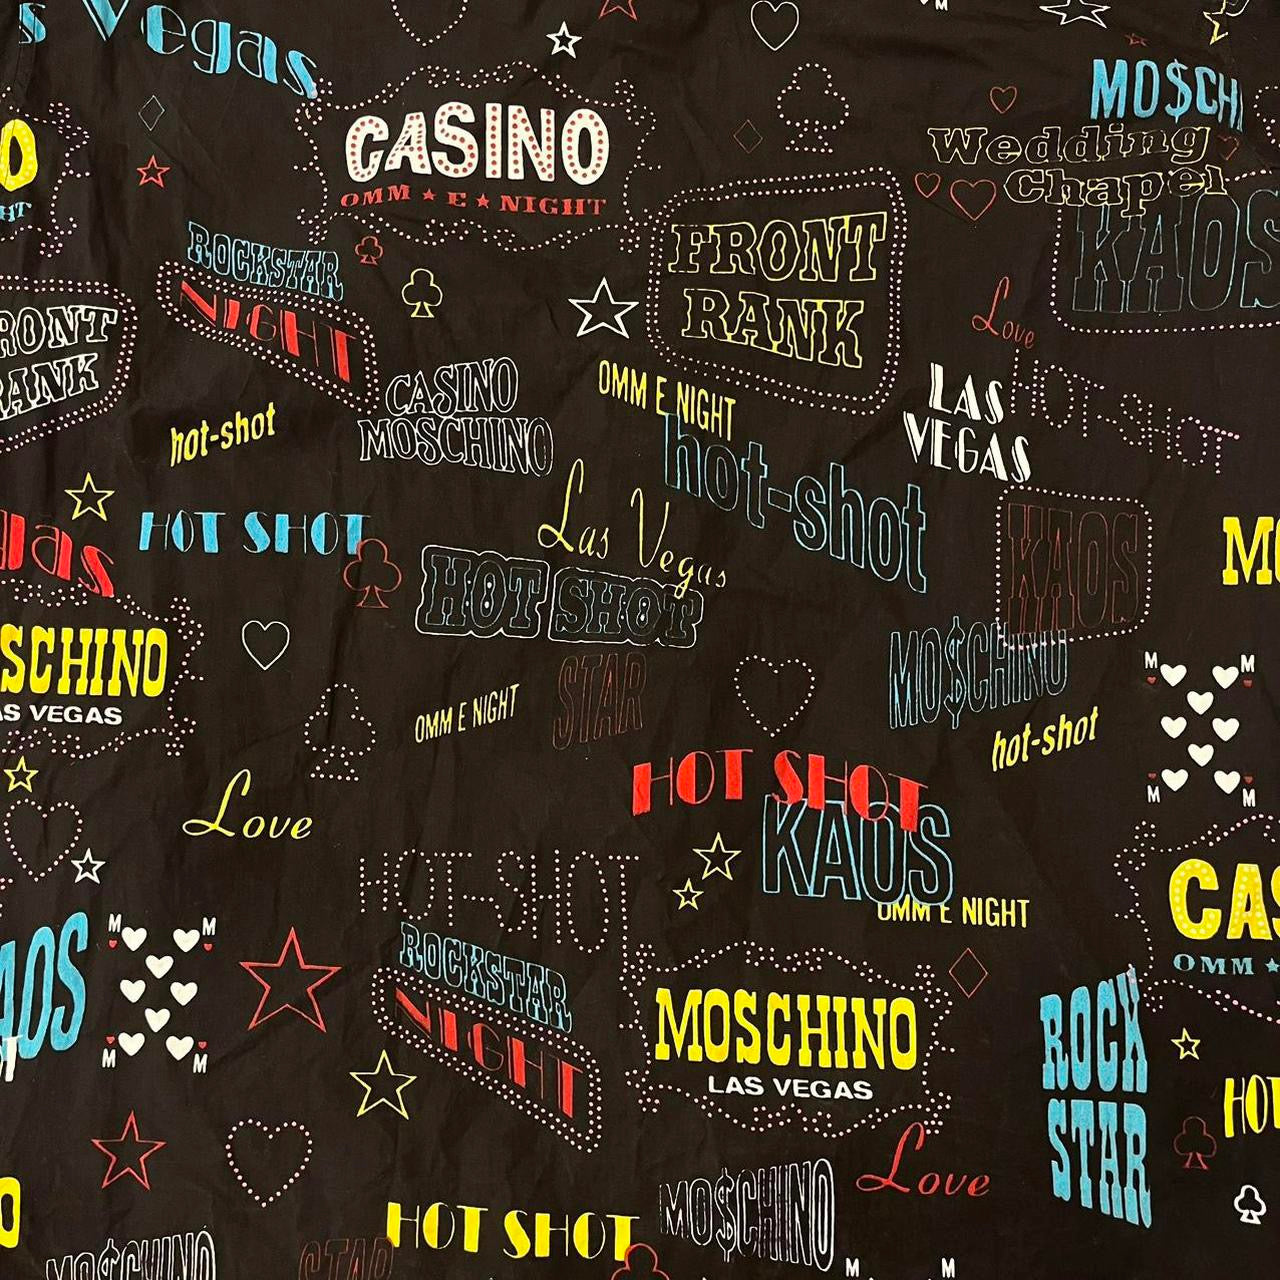 Moschino casino shirt (L)